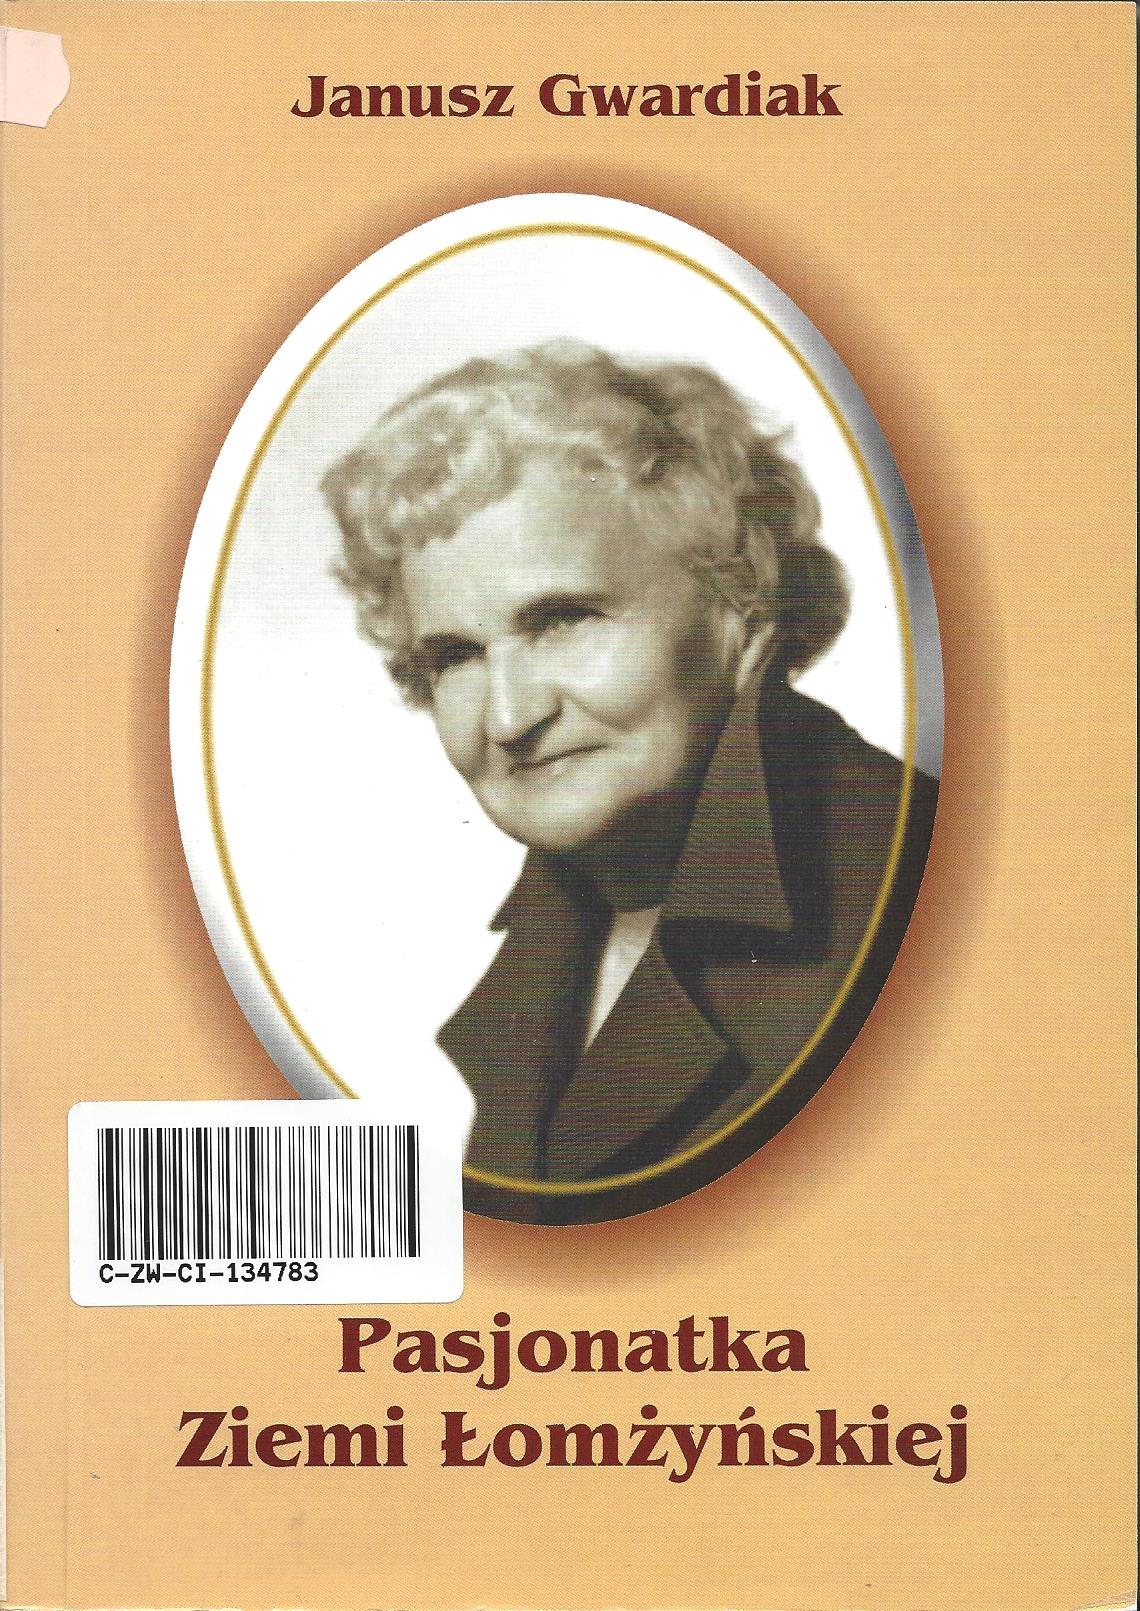 26. Janusz Gwardiak – „Pasjonatka Ziemi Łomżyńskiej”, Łomża 2002.